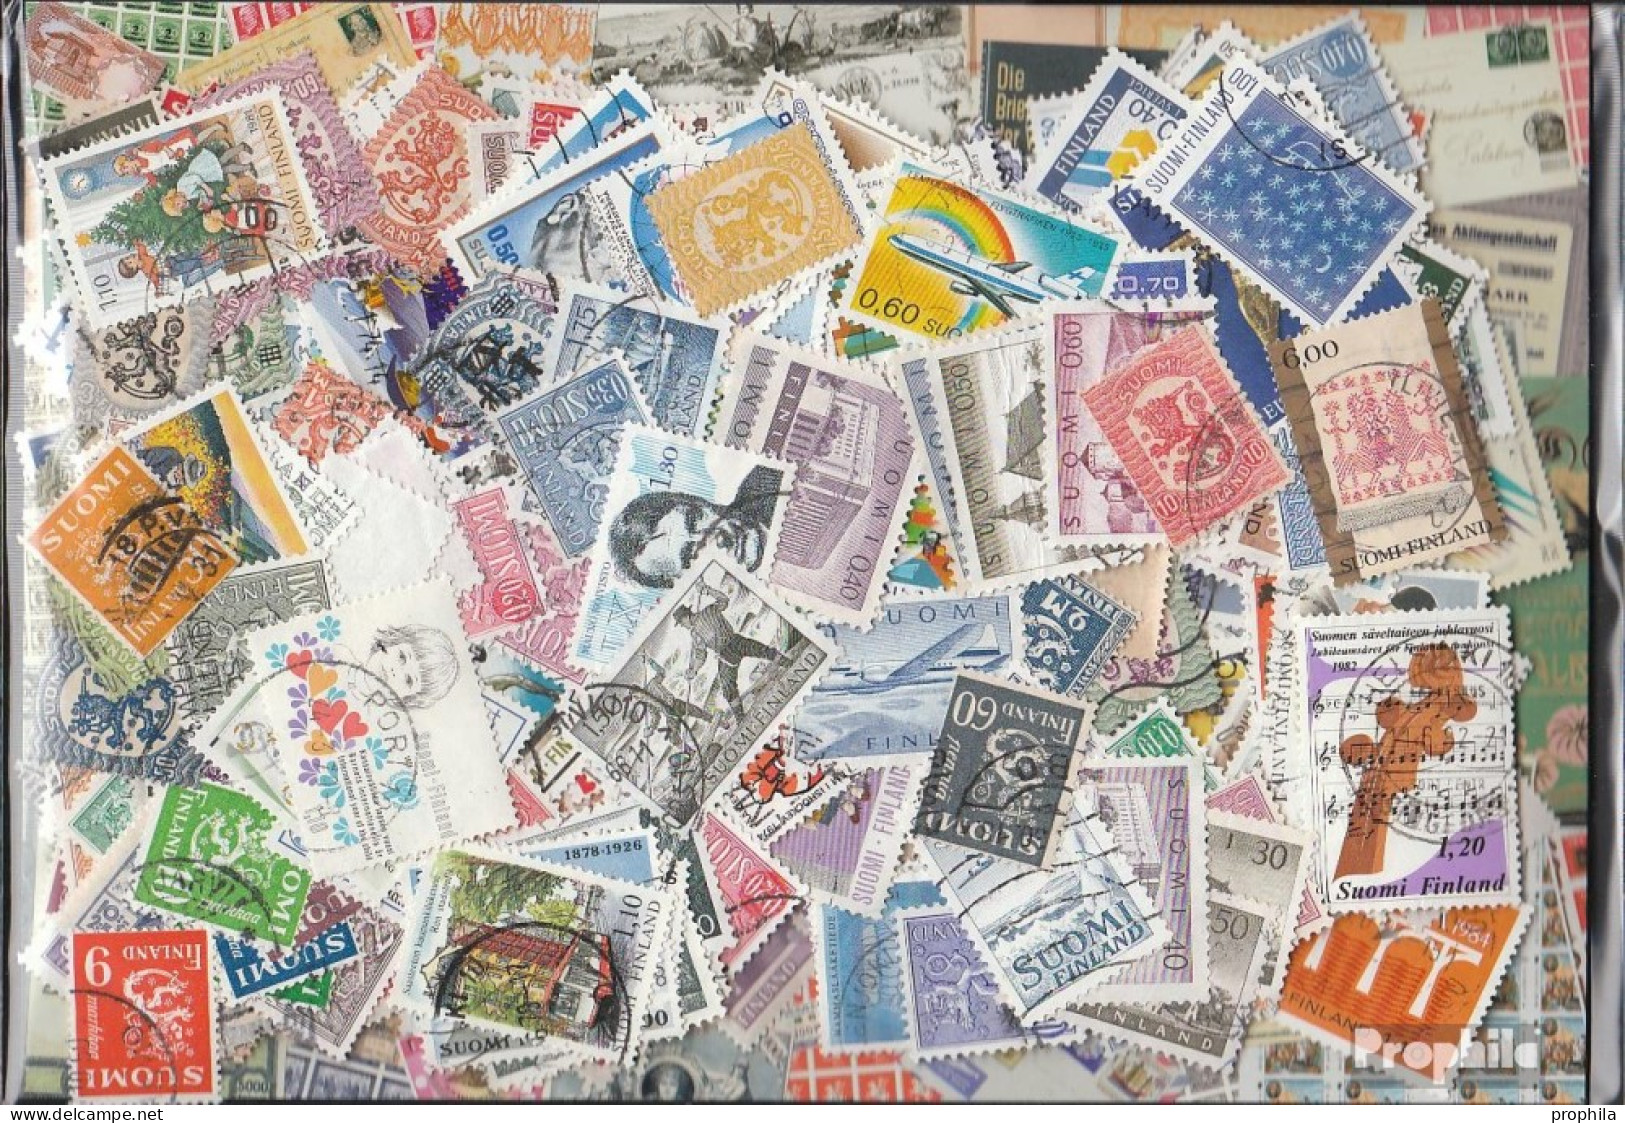 Finnland Briefmarken-400 Verschiedene Marken - Sammlungen